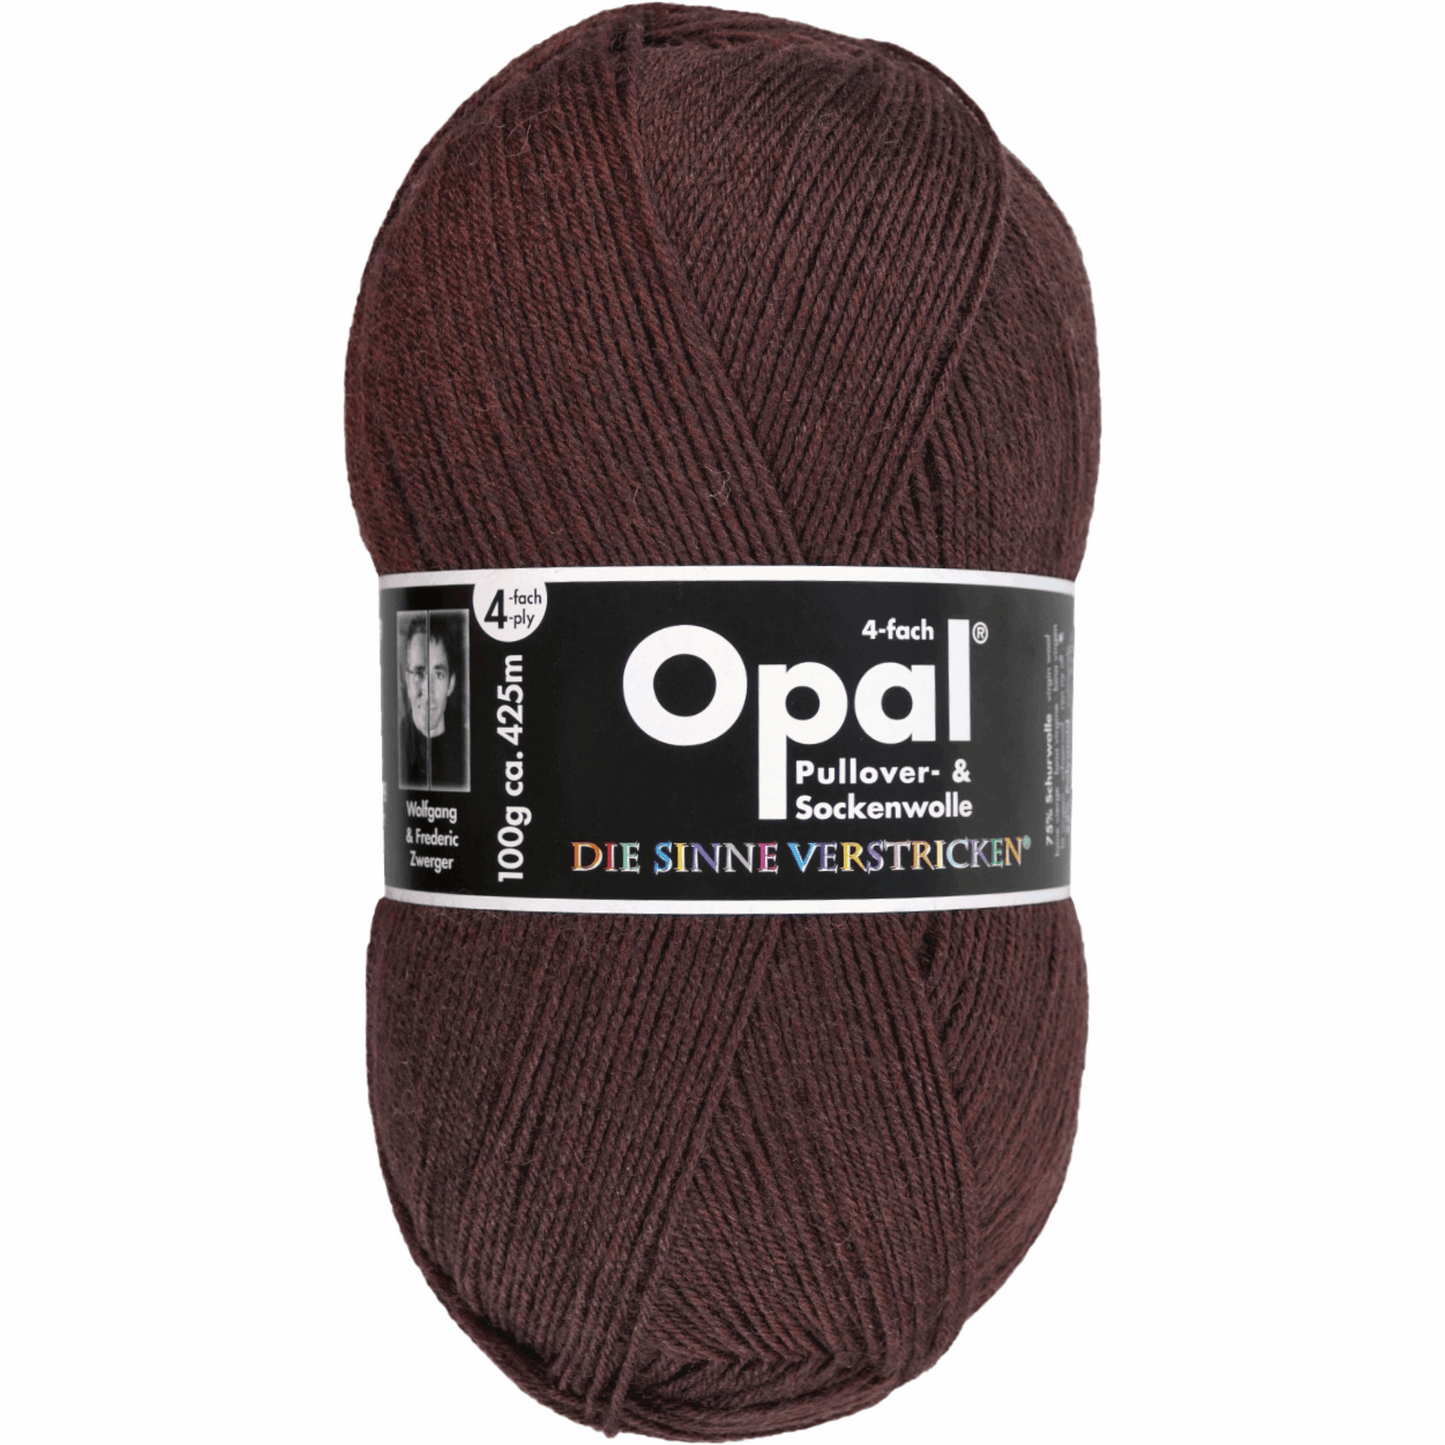 Opal plain 4 threads. 100g 2011/12, 97760, color dark brown 5192